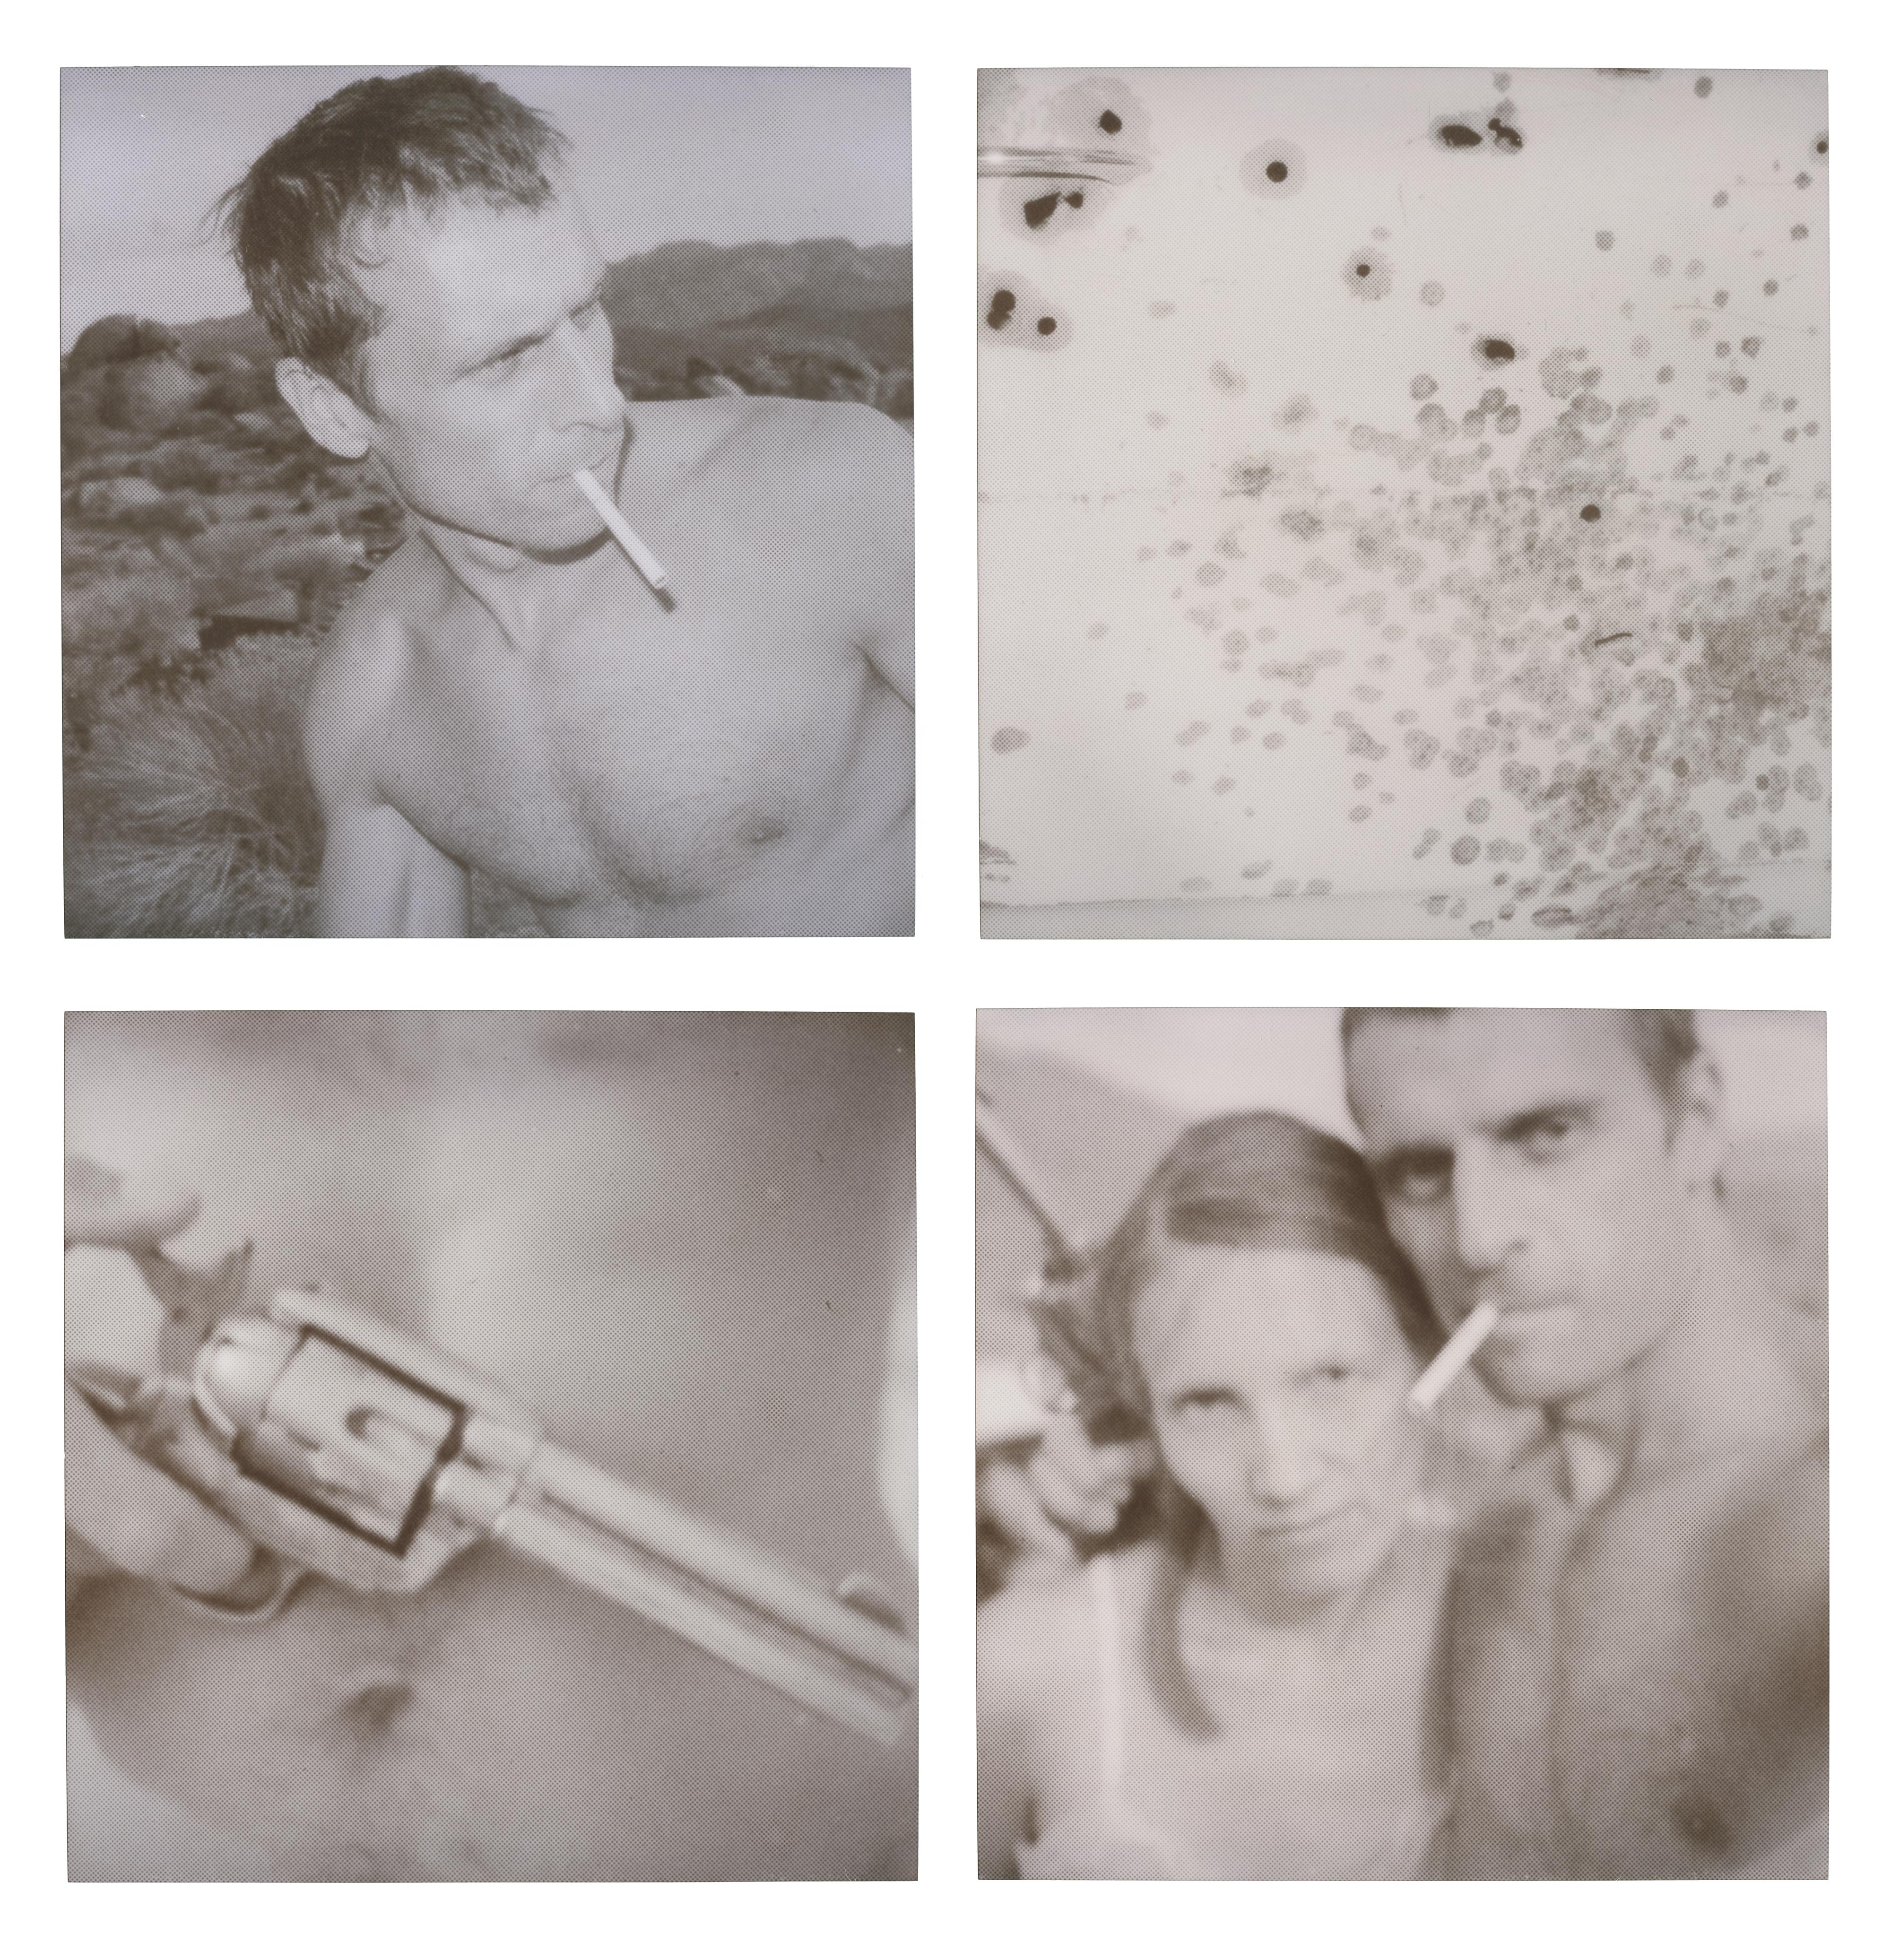 Stefanie Schneider Black and White Photograph – Snap-15 Minutes of Fame (Wastelands) - analog, nicht montiert, Polaroid